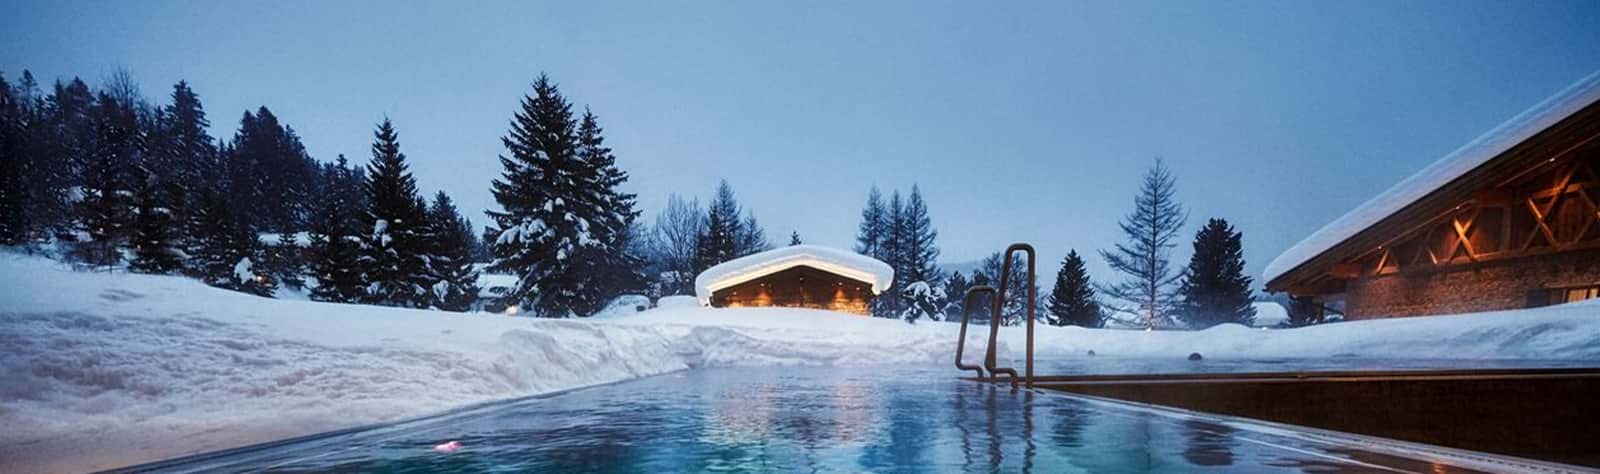 Austria Ski Accommodation